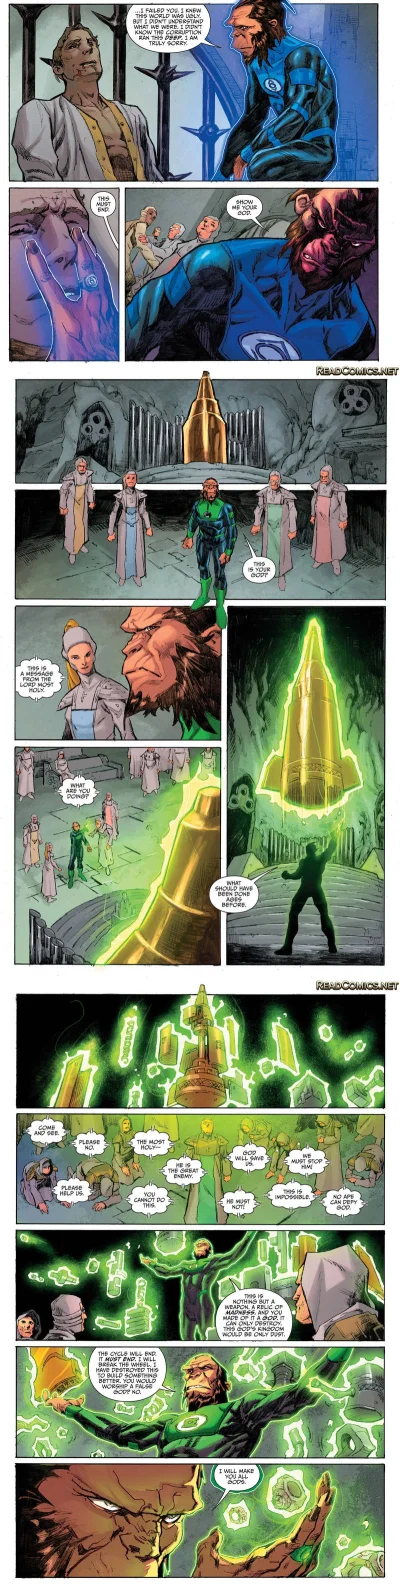 l-da - #komiks #planetoftheapes #greenlantern #komiksy